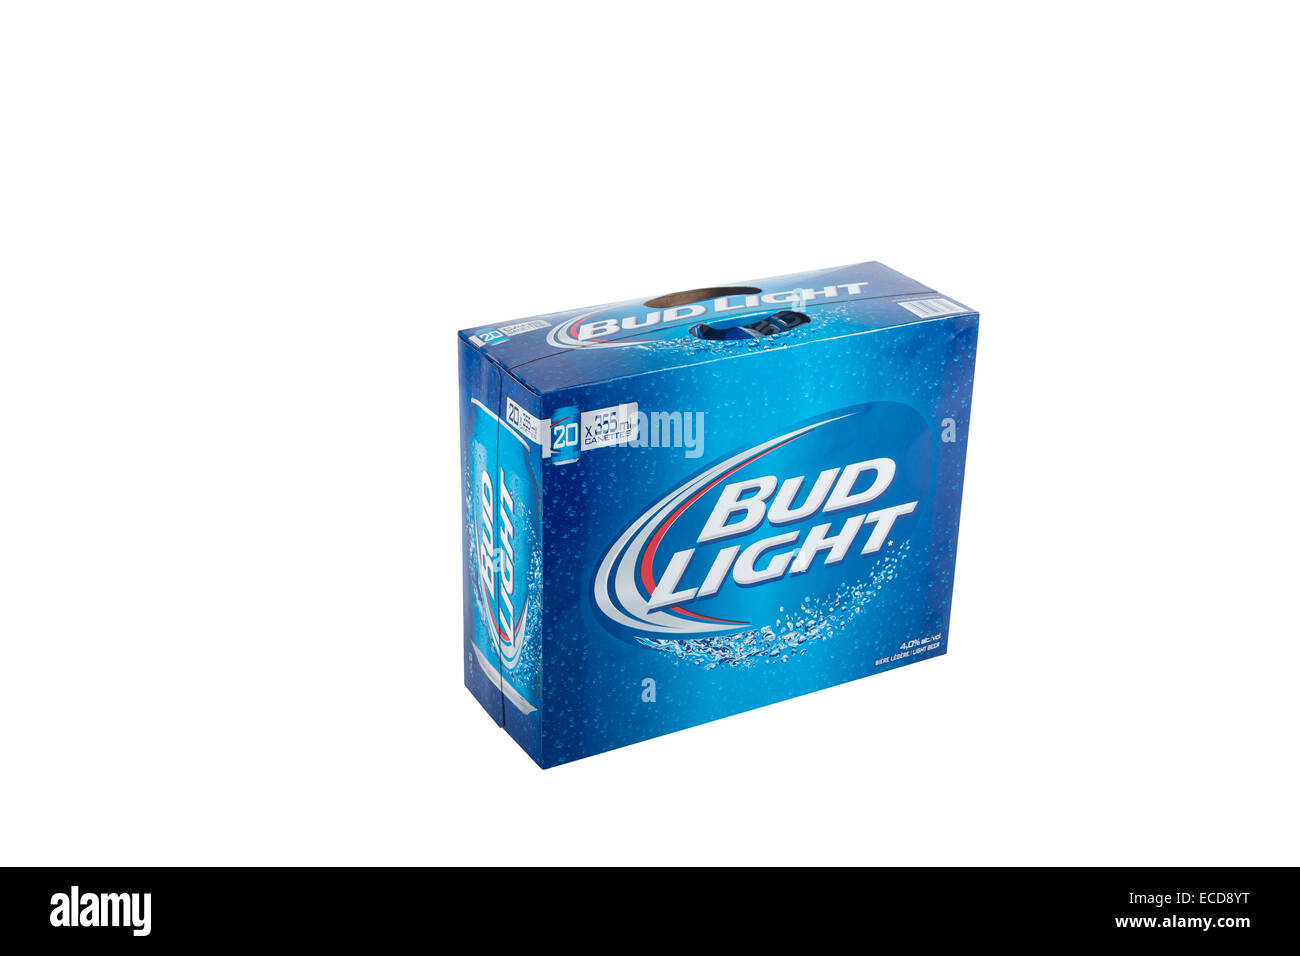 Eine Packung 20 355 ml Dosen Bud Light Bier ist über einen rein weißen Hintergrund abgebildet. Stockfoto